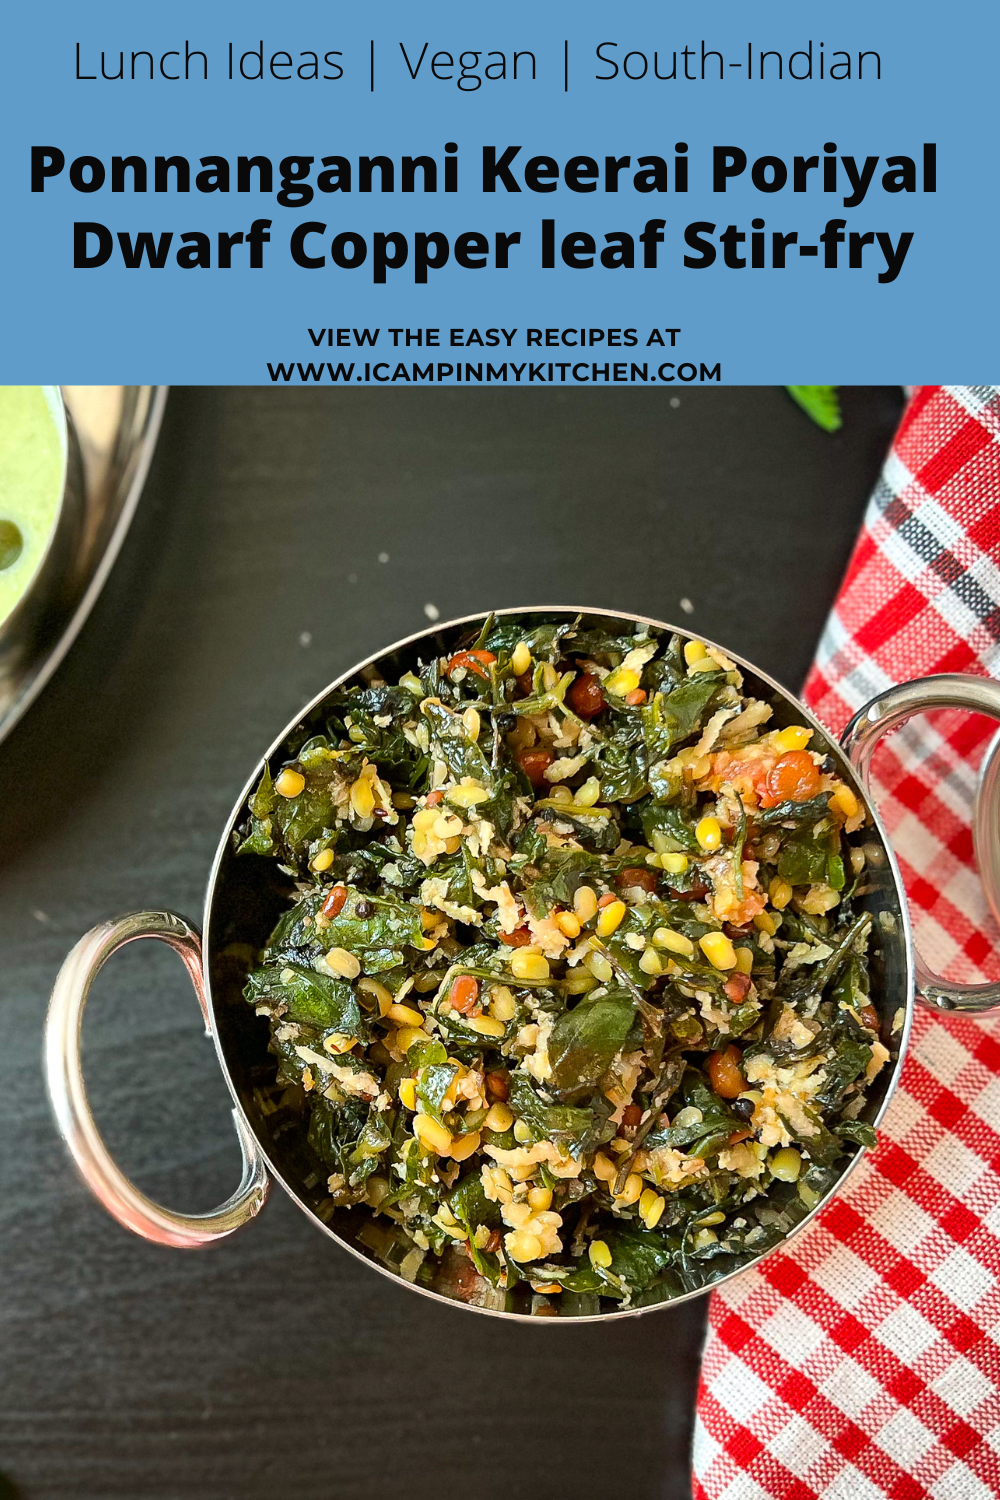 Dwarf copperleaf leaves stir-fry